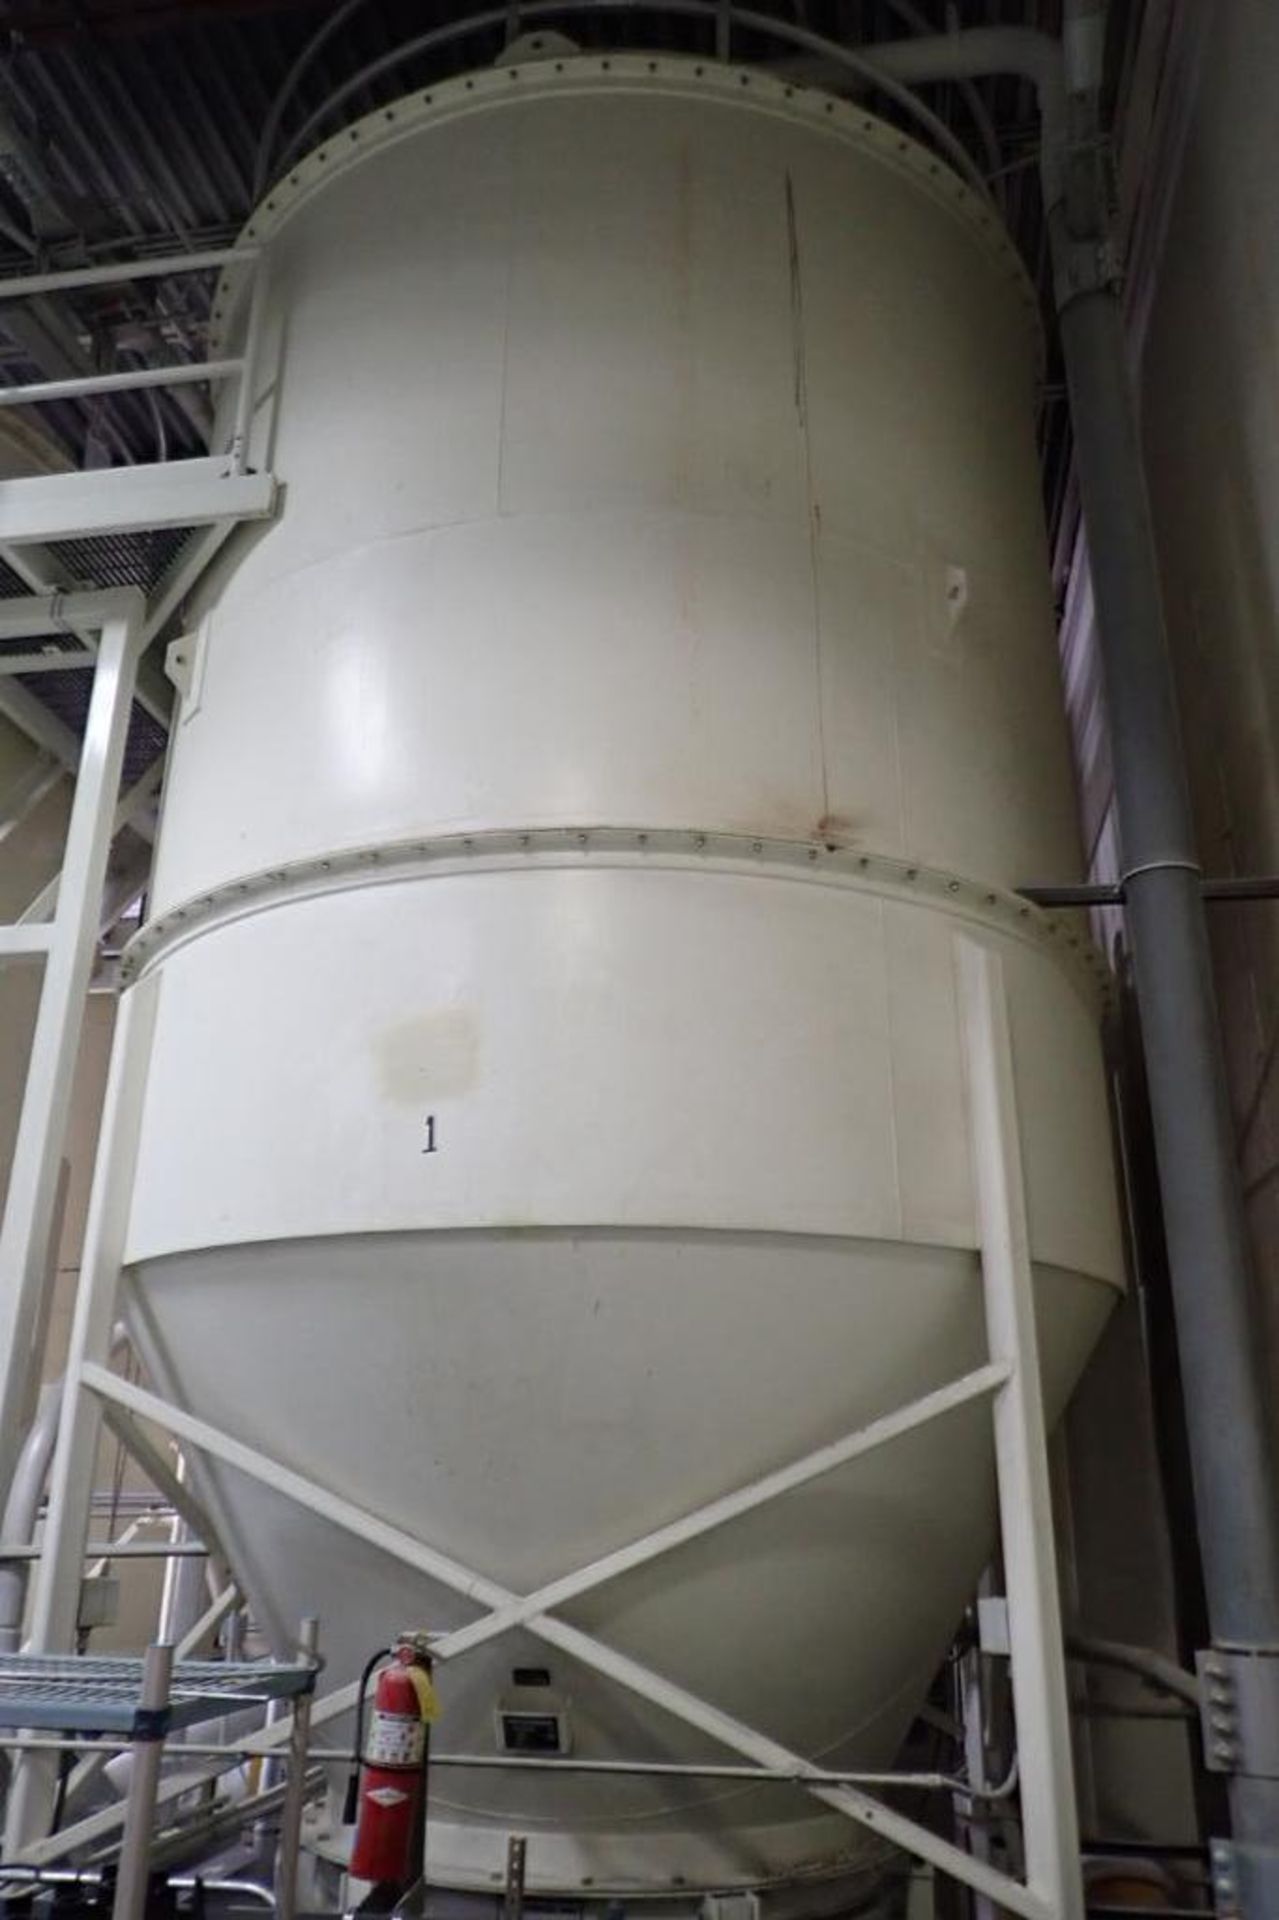 1999 Imperial Industries mild steel flour use bin, 12 ft. dia. X 27 ft. tall, 36 lbs./ cu ft. max de